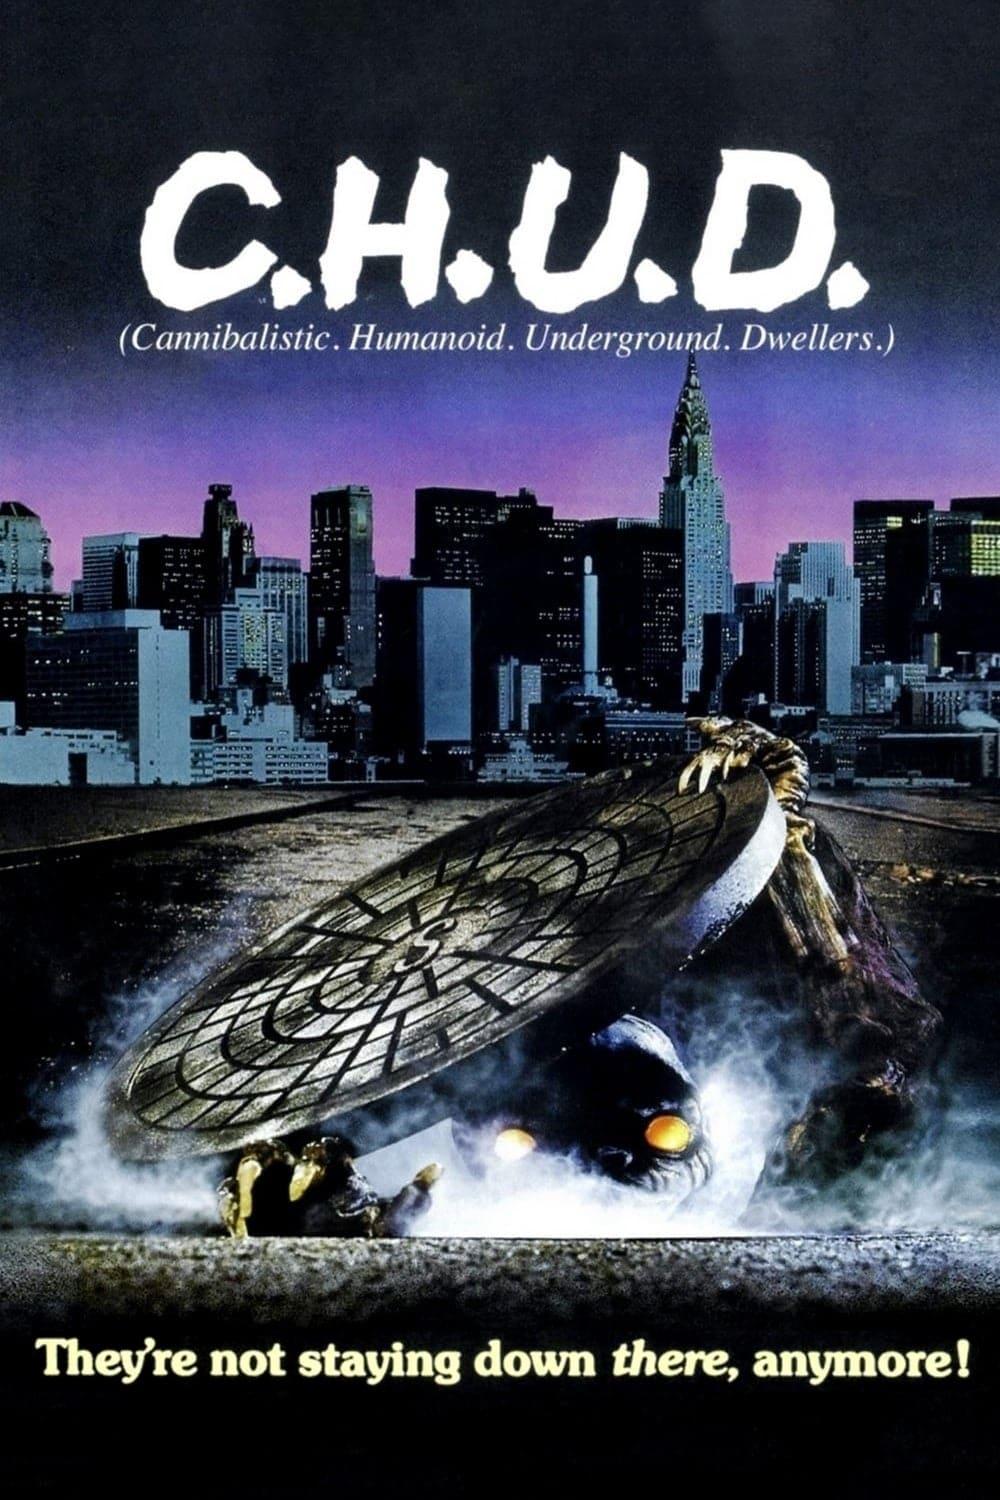 C.H.U.D. poster